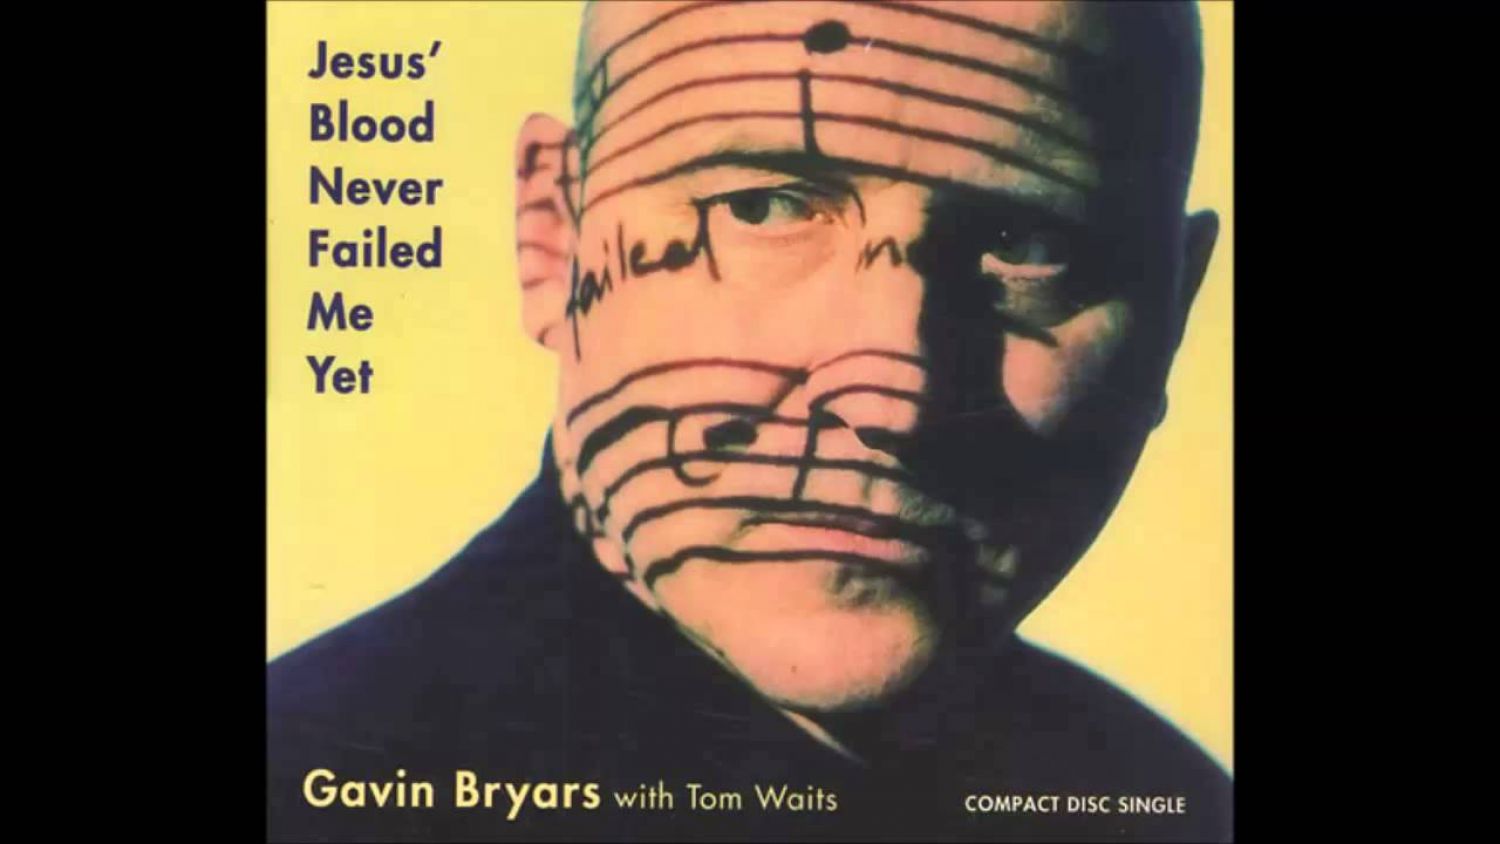 Gavin Bryars, Tom Waits, Jesus Blood Never Failed Me Yet